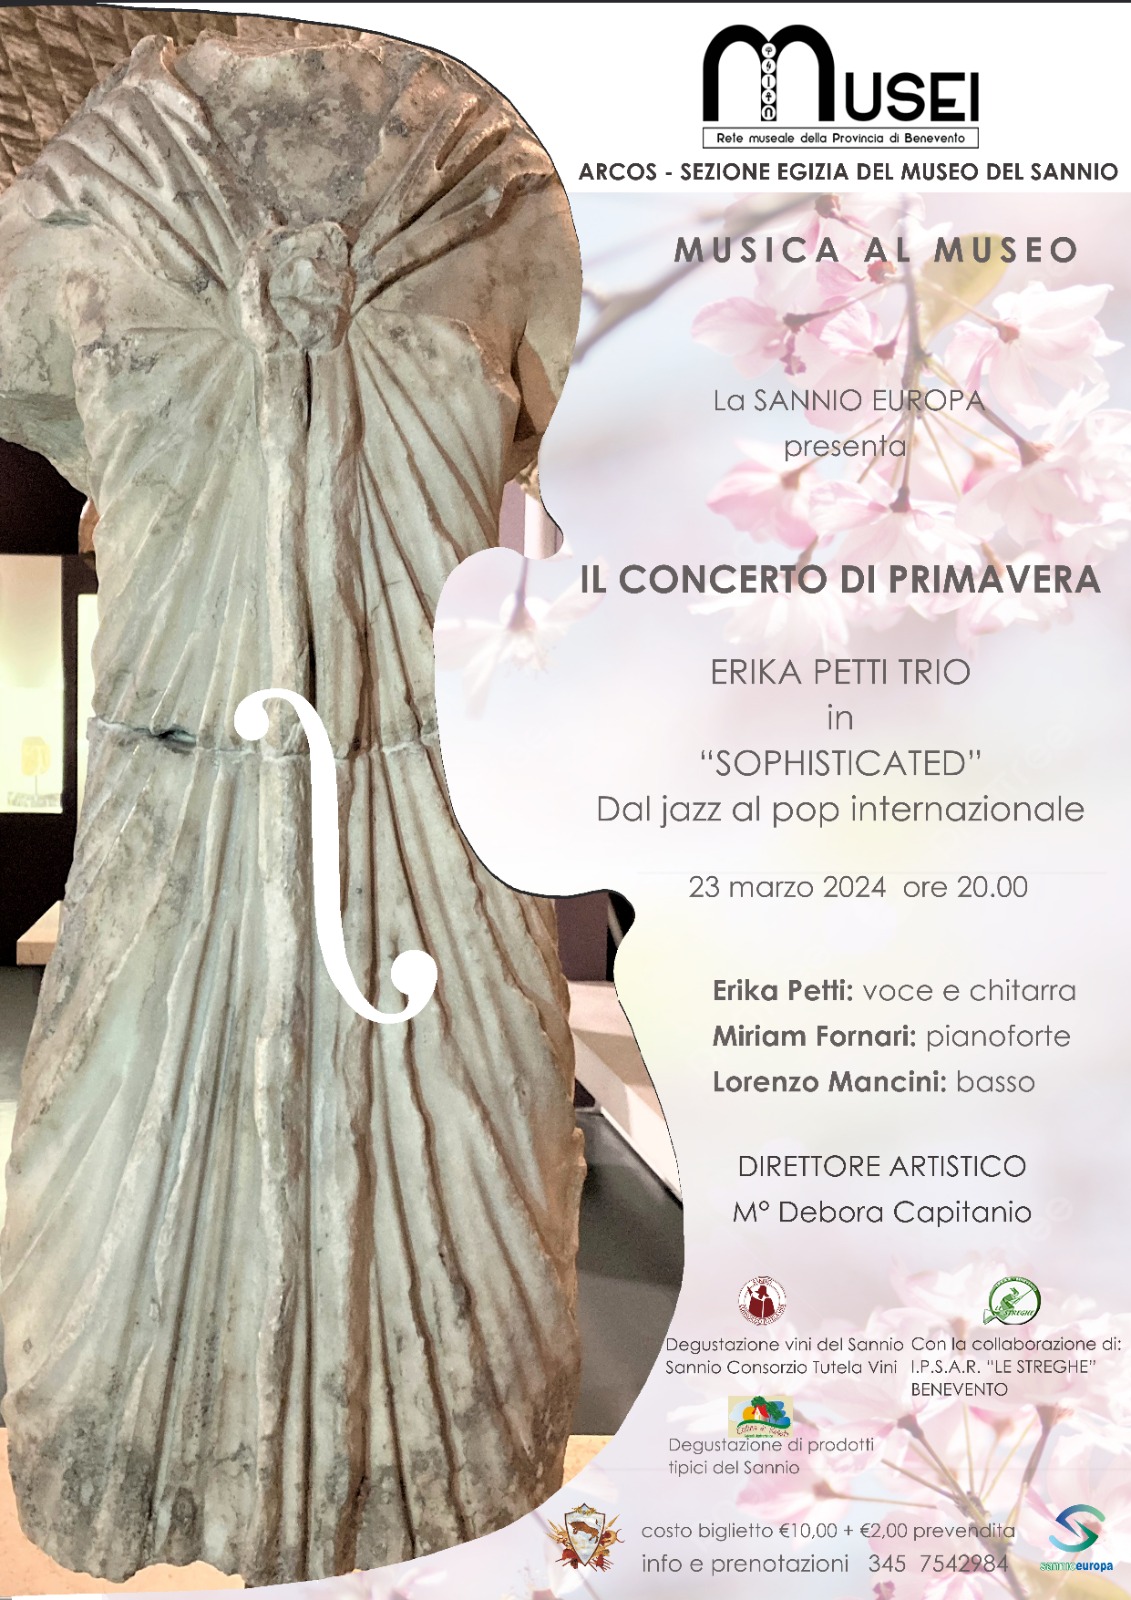 Musica al Museo, ad Arcos il Concerto di Primavera con “Erika Petti Trio”